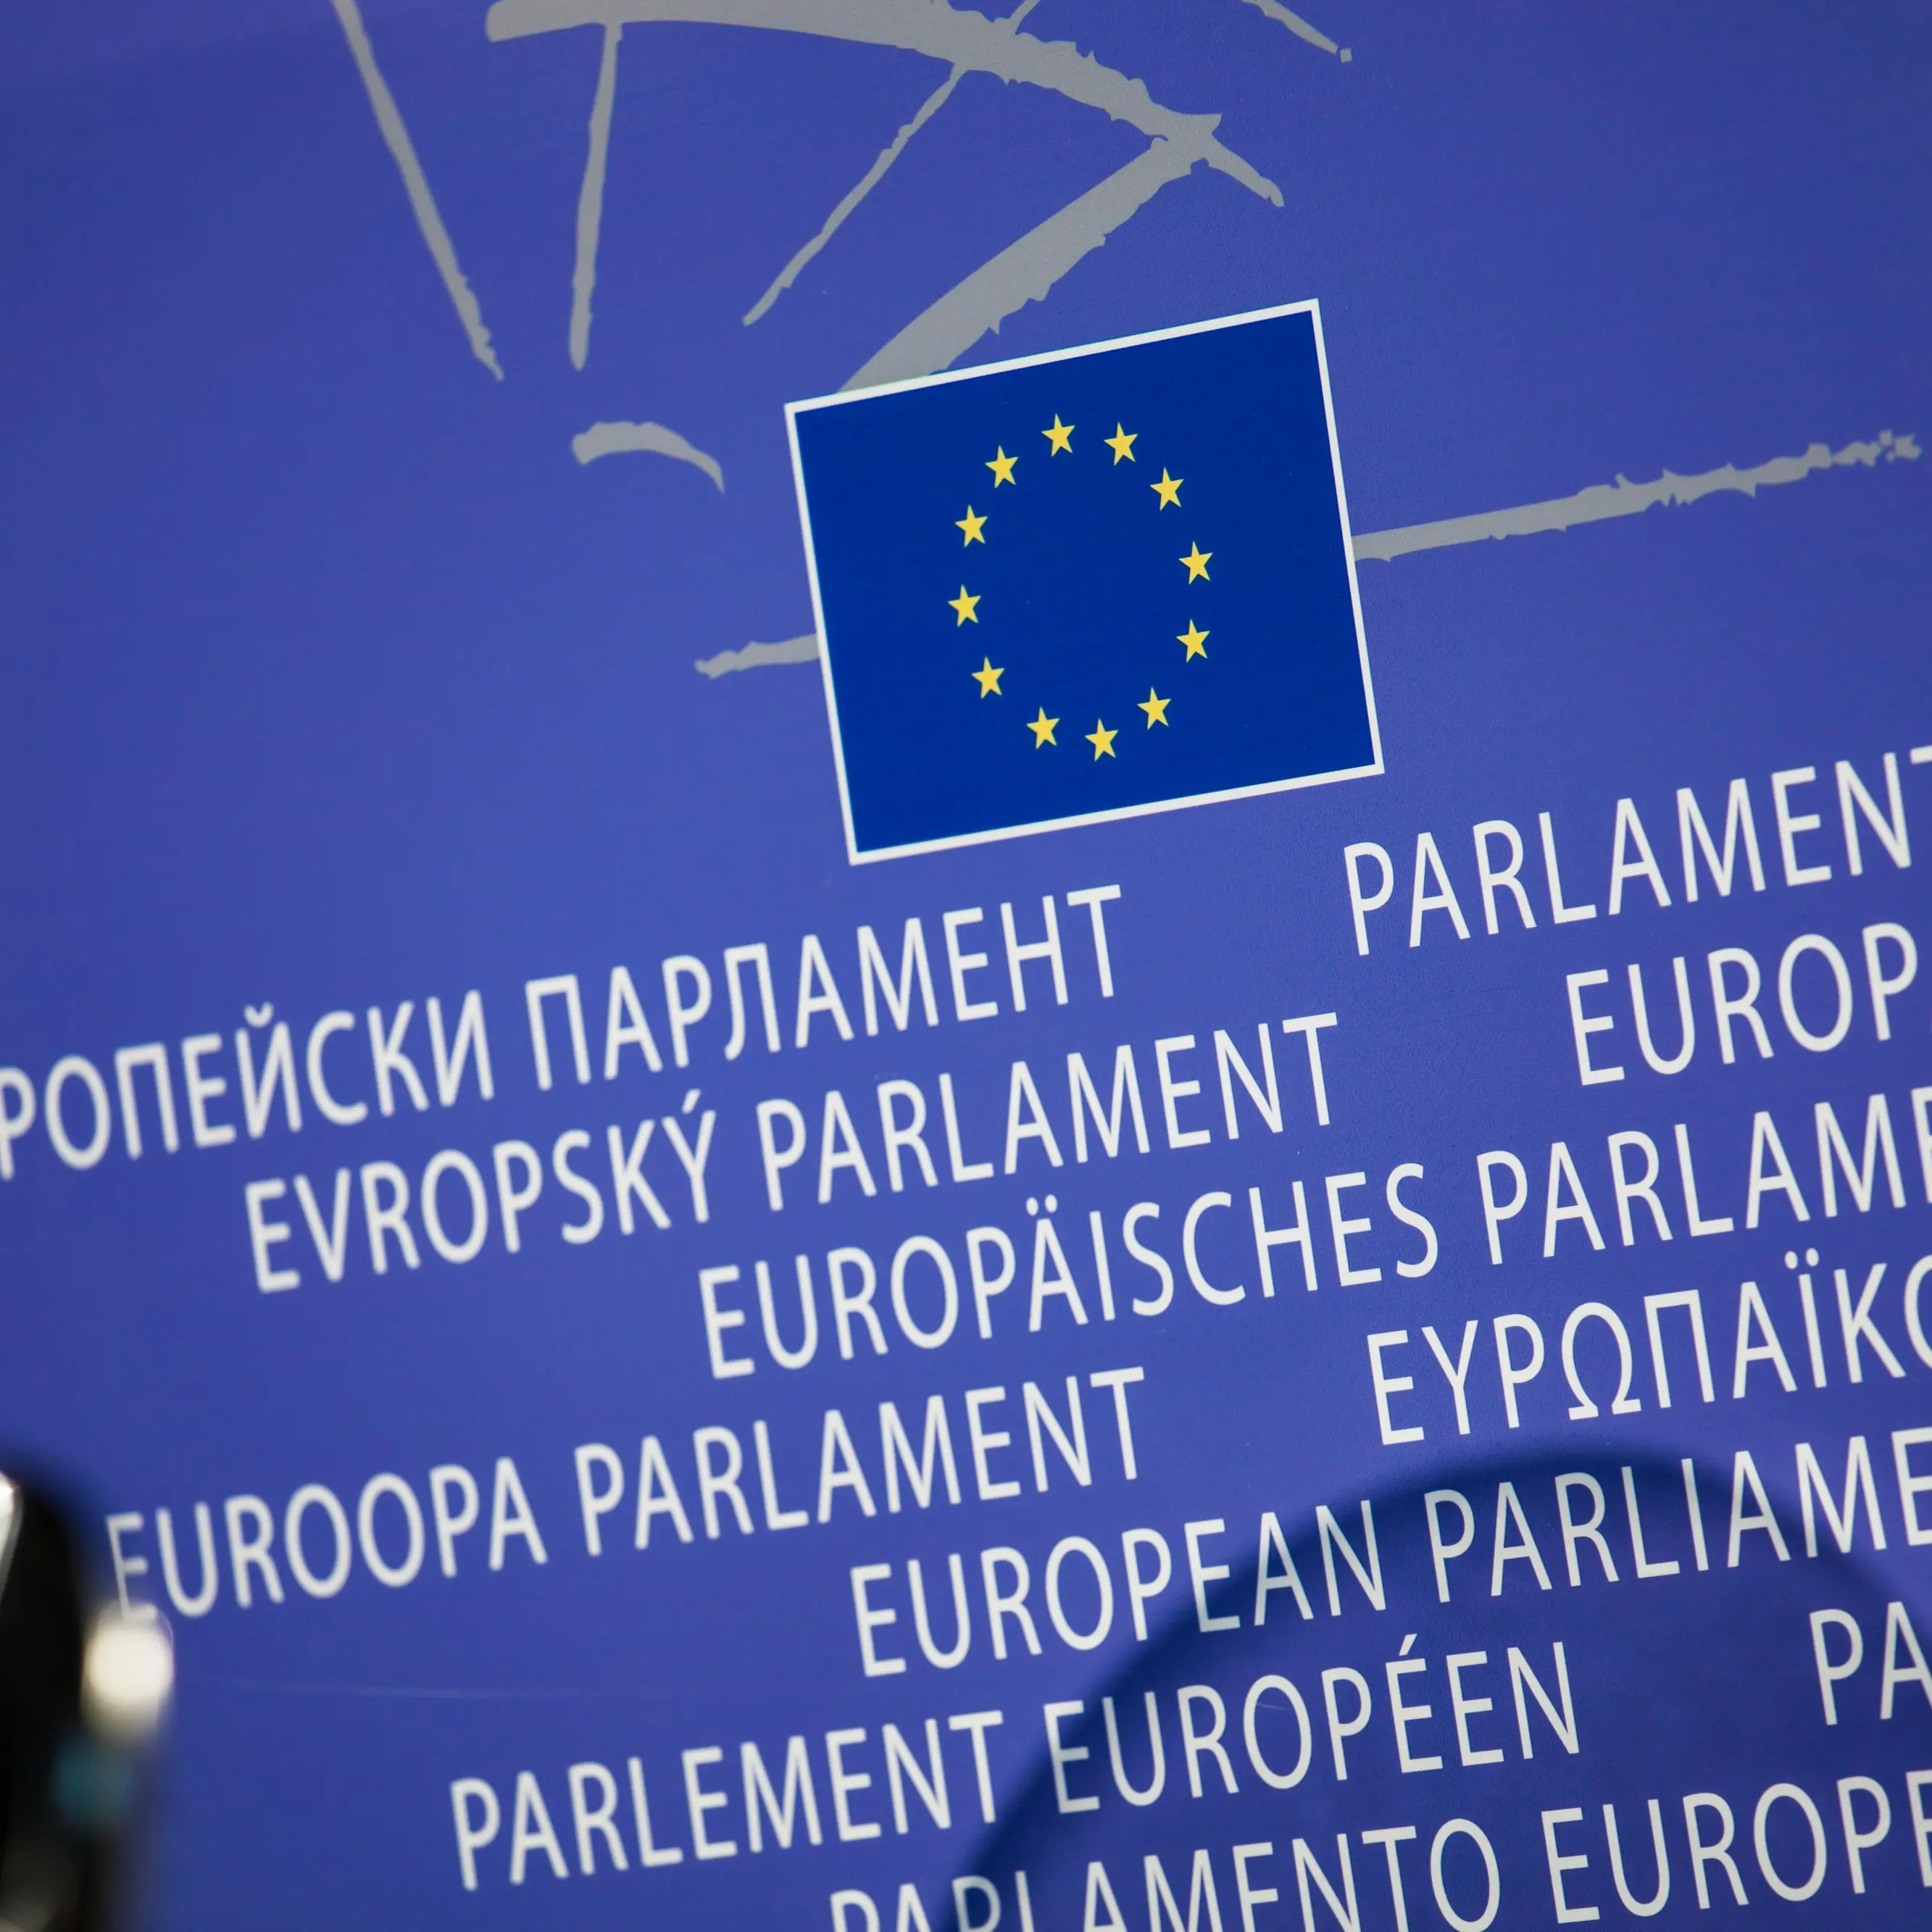 PNRR: le ulteriori modifiche approvate dall’Unione Europea – Nota Cgil nazionale